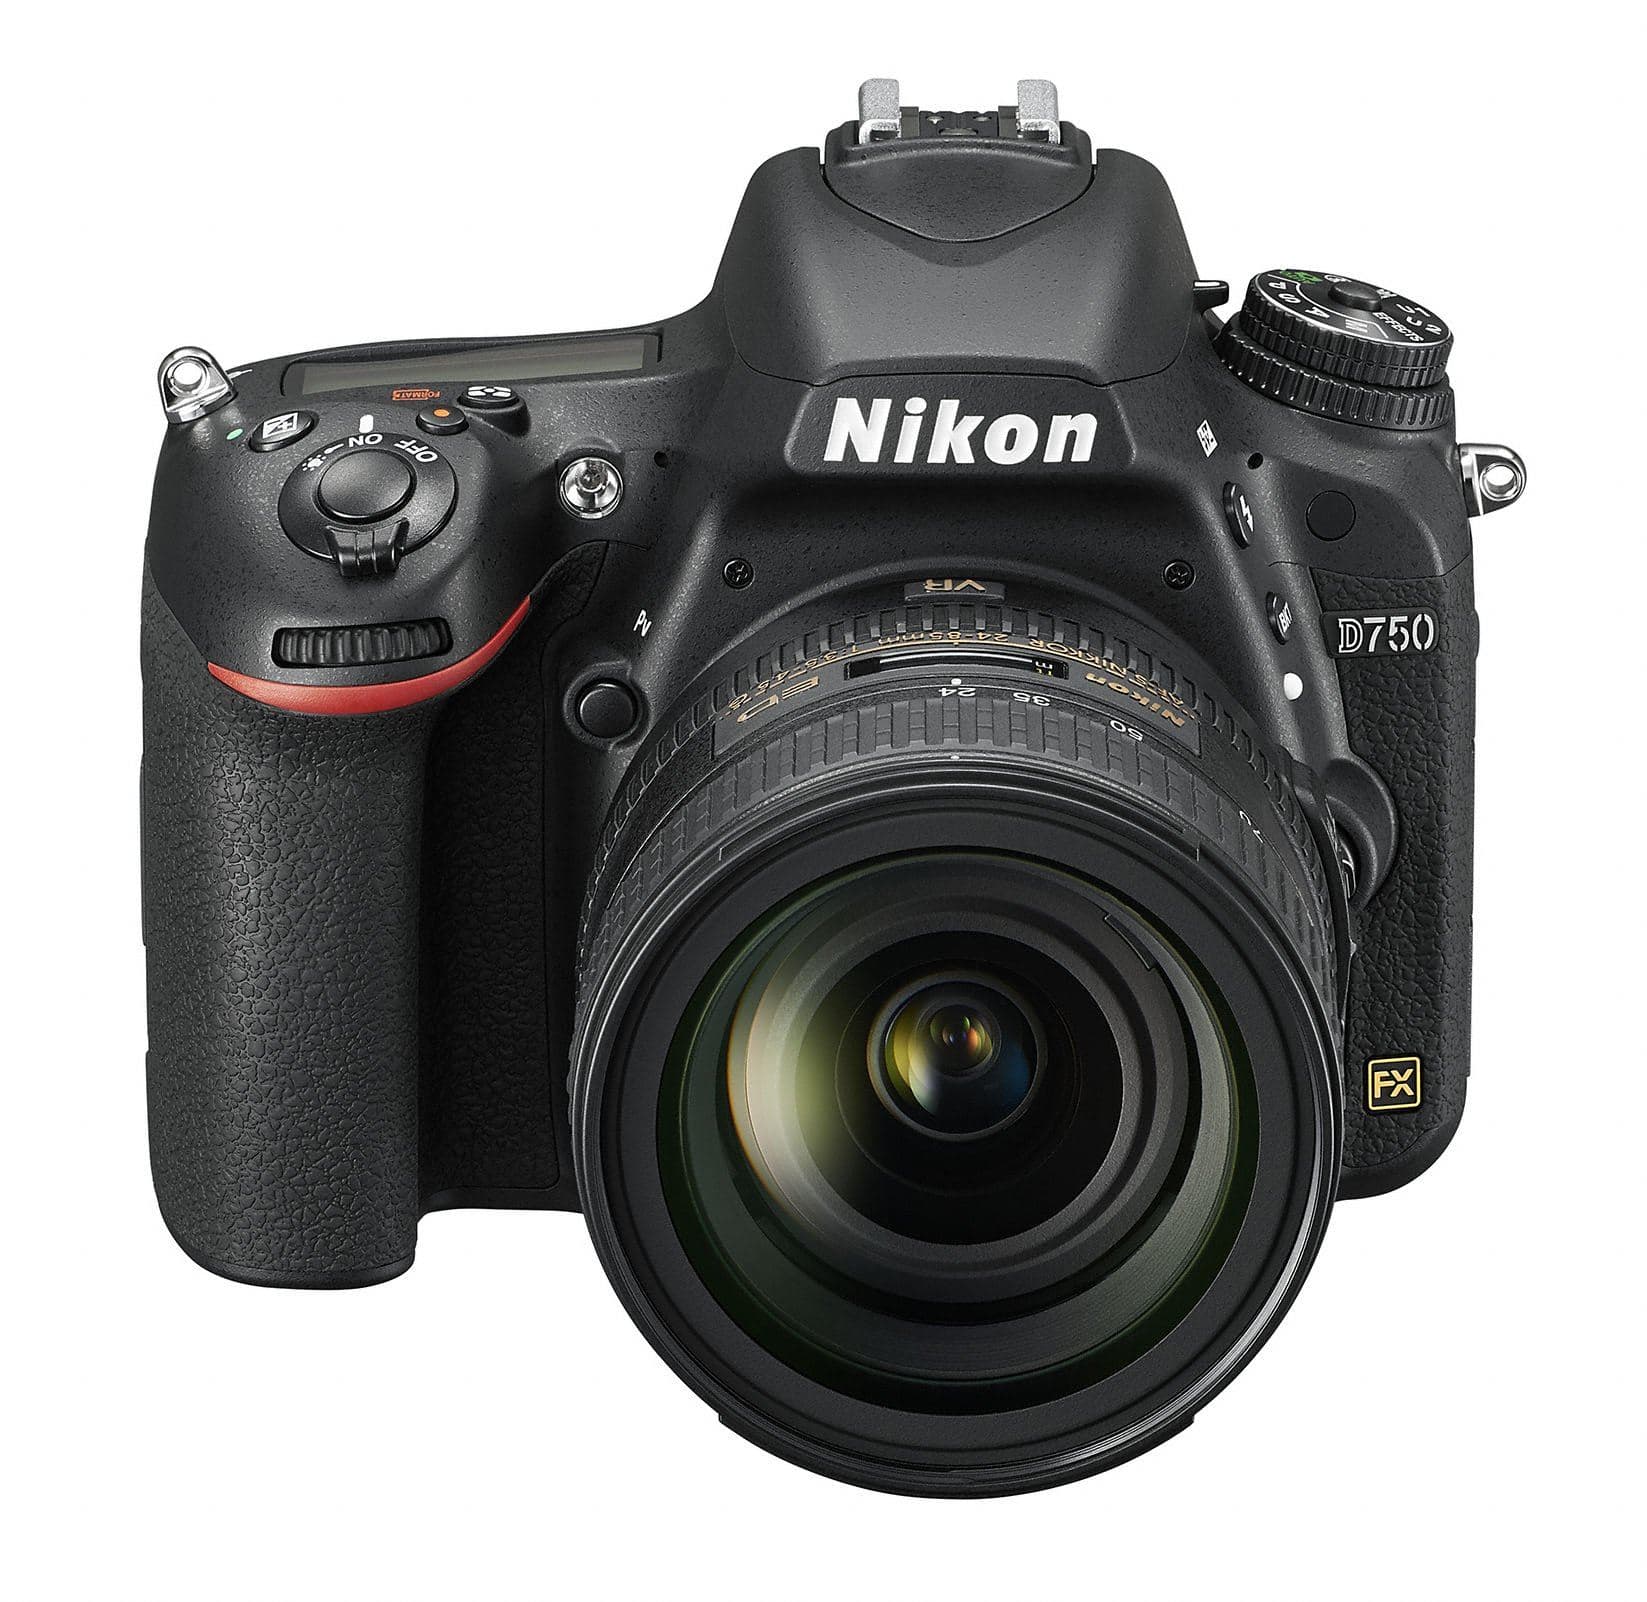 Iconic Nikon cameras - Nikon D750